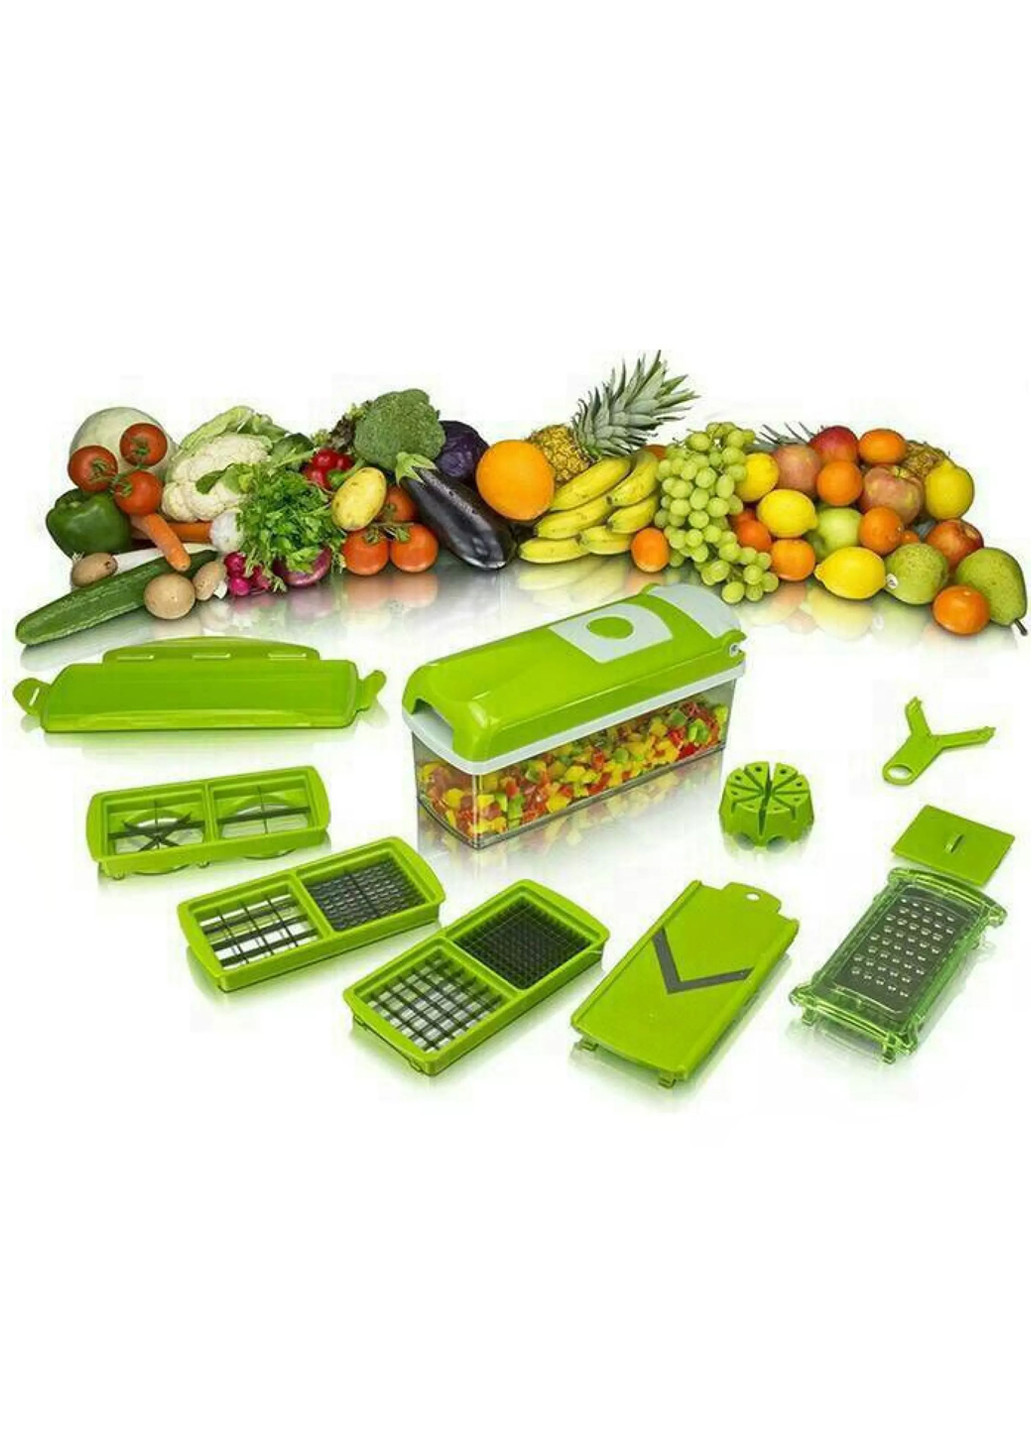 Многофункциональная овощерезка-шинковка терка для овощей и фруктов с контейнером + 5 насадок UFT vc4 (252395183)